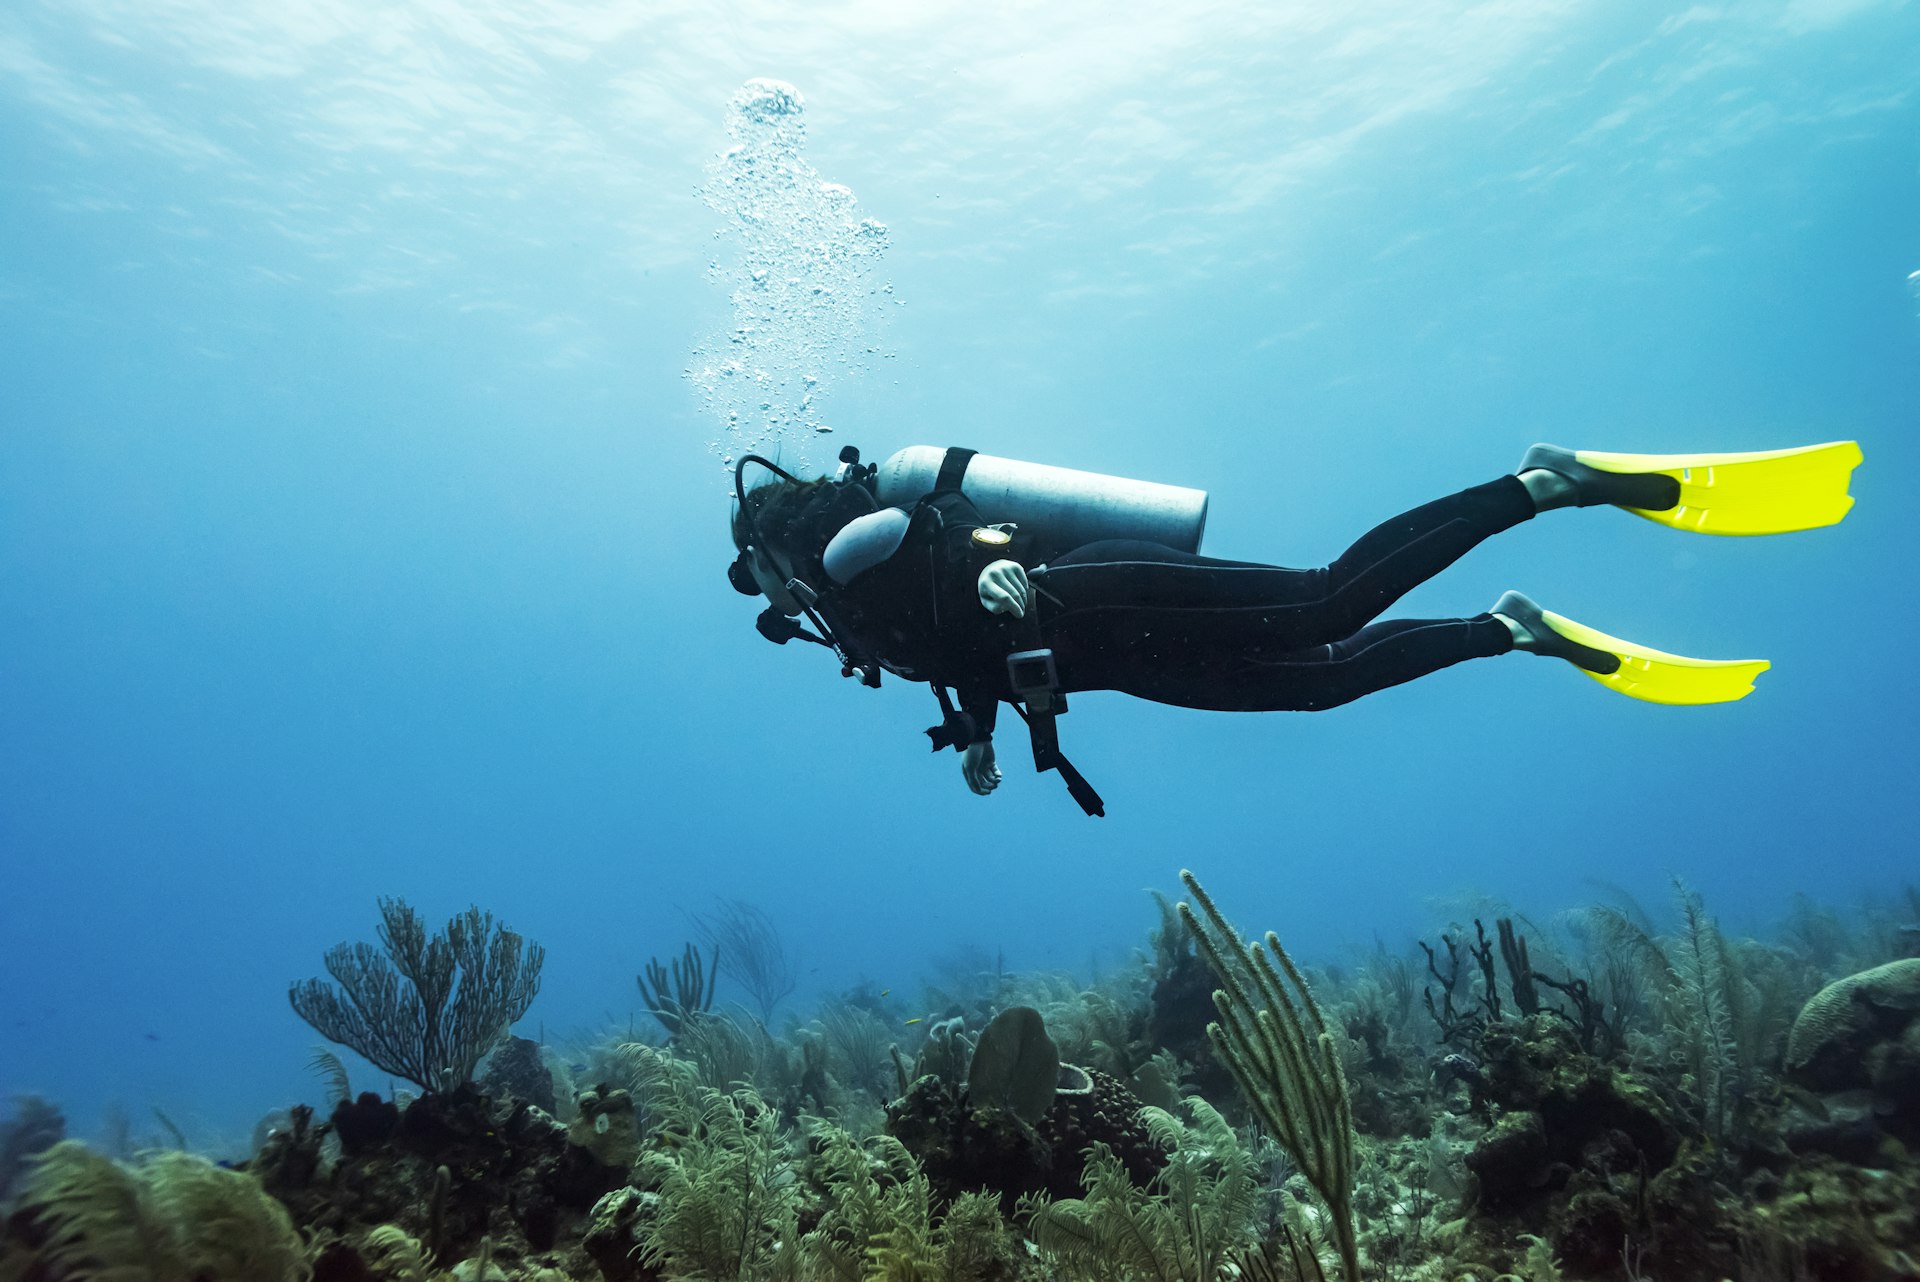 Scuba diver at Joe's Wall Dive Site, Belize Barrier Reef